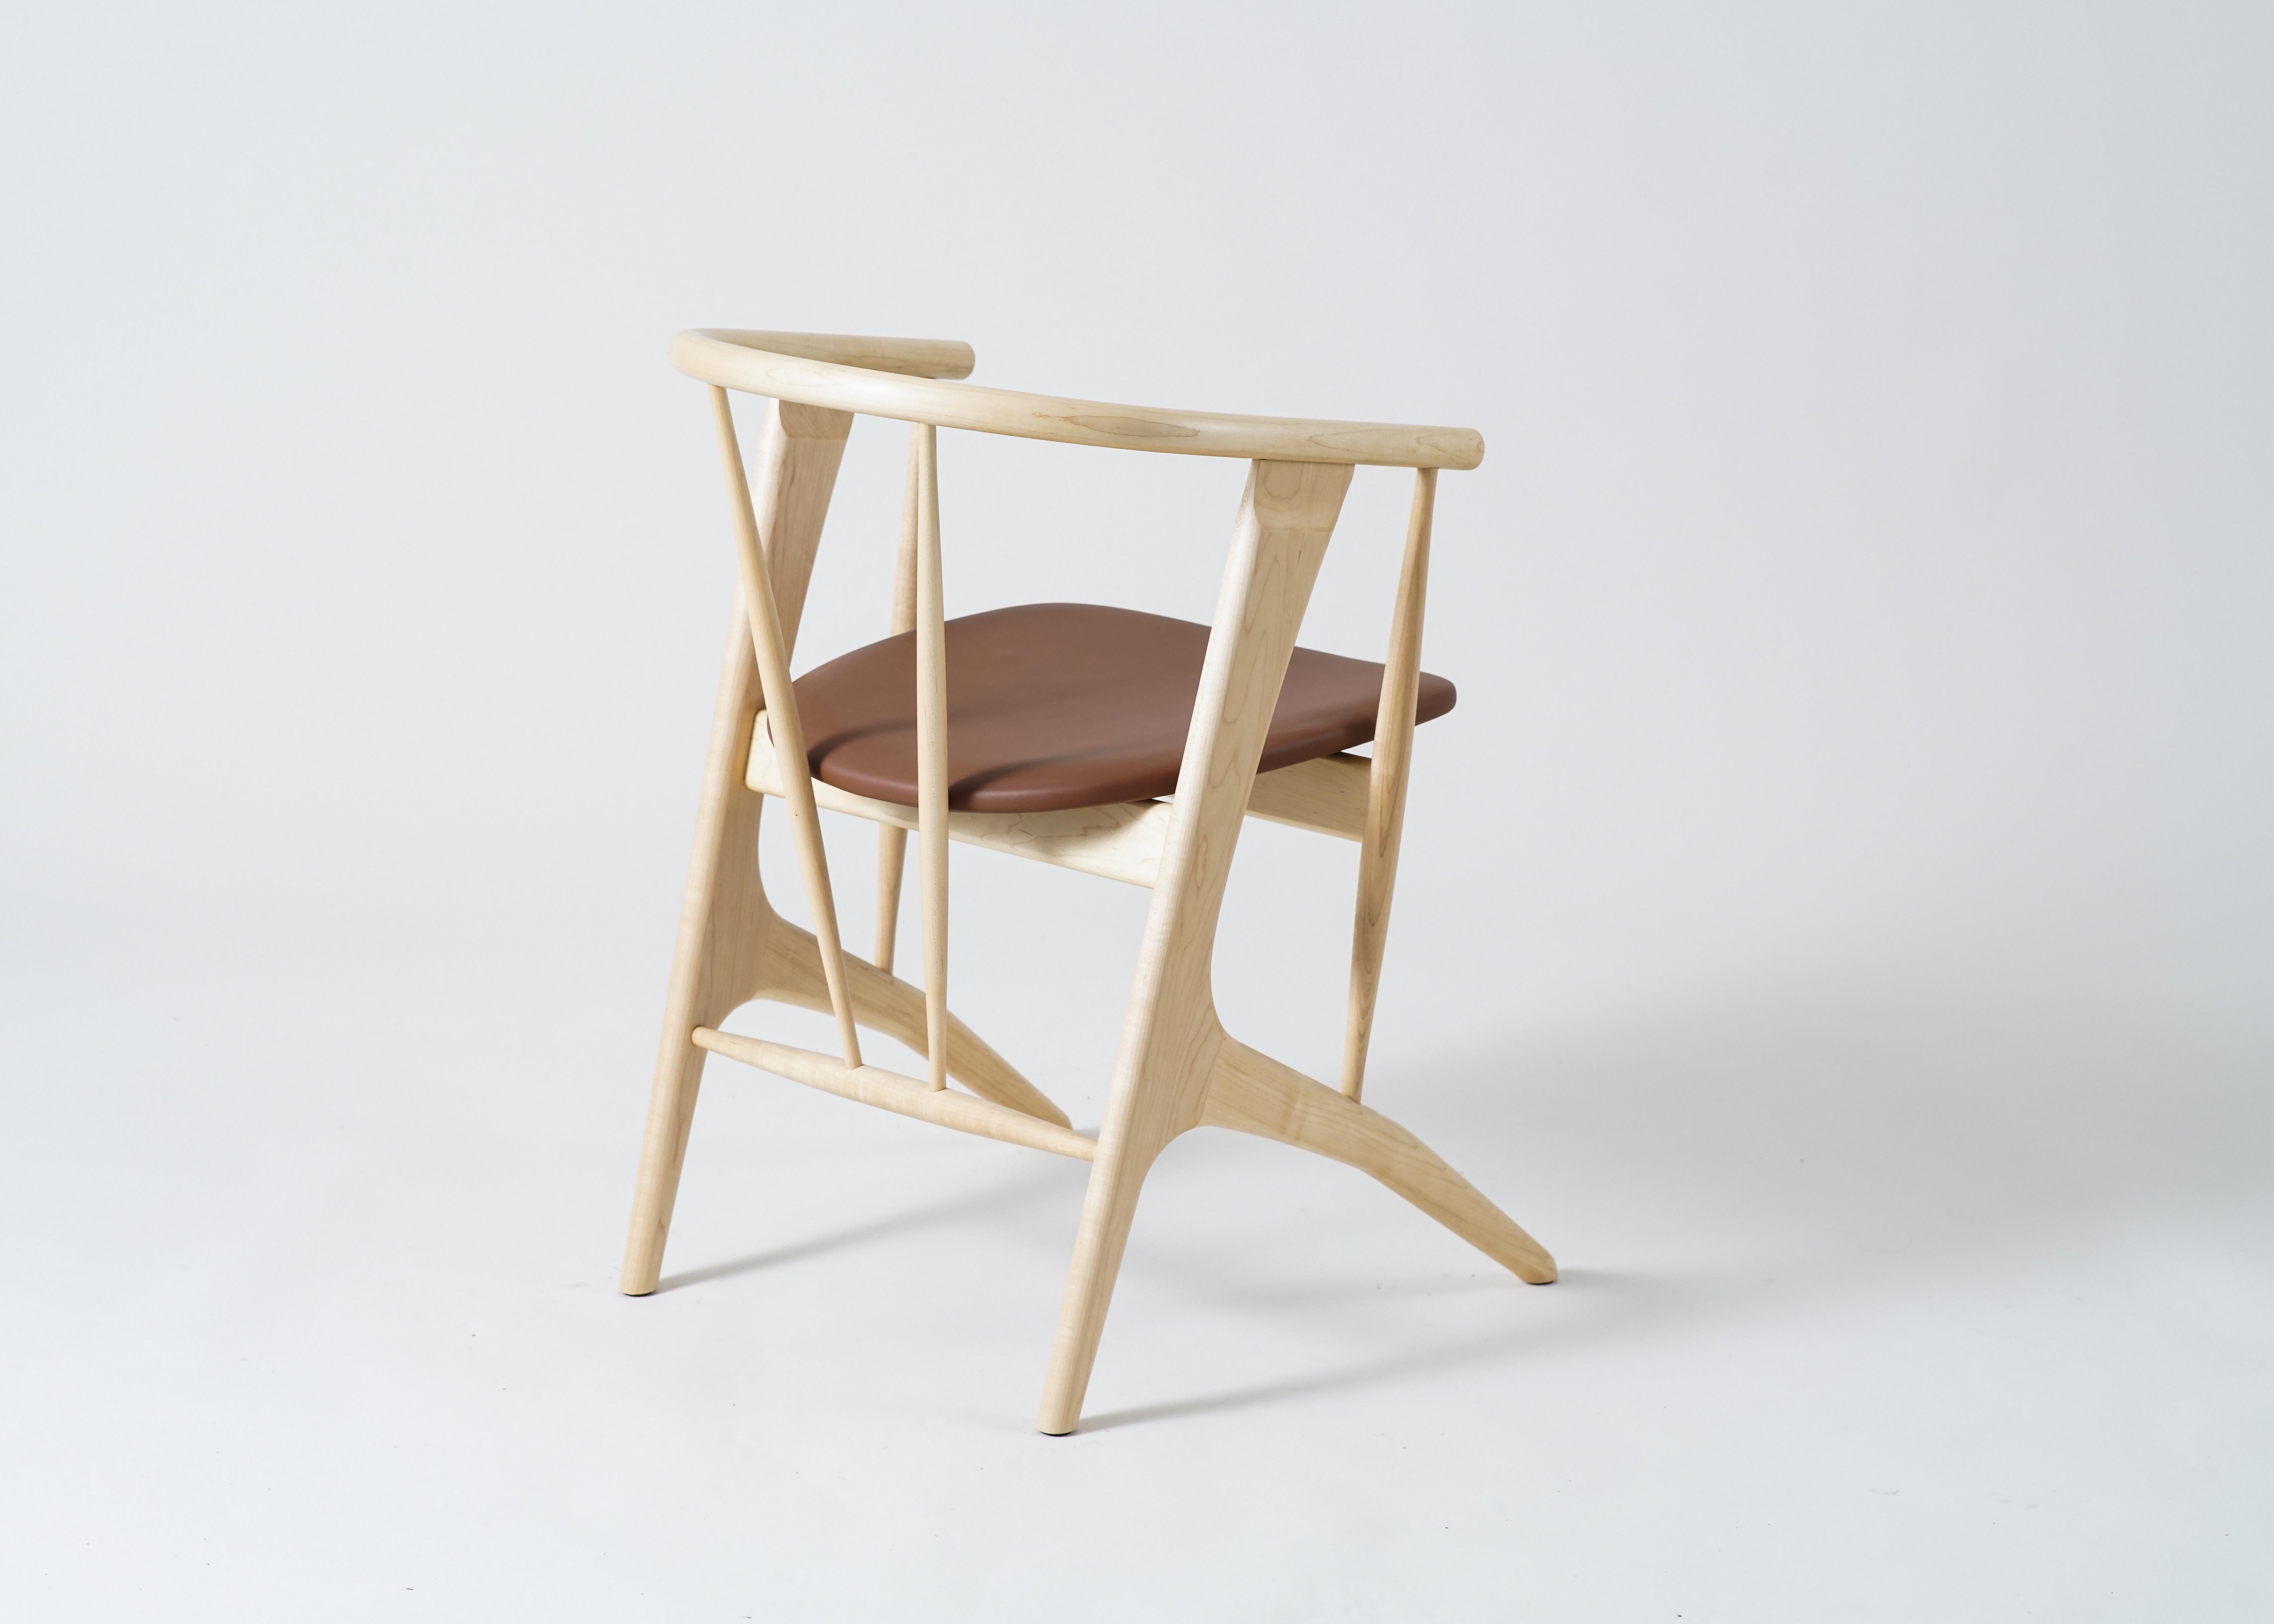 Le fauteuil Zoe de Phloem Studio est un fauteuil moderne et contemporain en bois massif fabriqué à la main sur commande.
Zoe est un fauteuil léger très bien conçu et très confortable, conçu pour les longs dîners ou les soirées de travail. Le dos